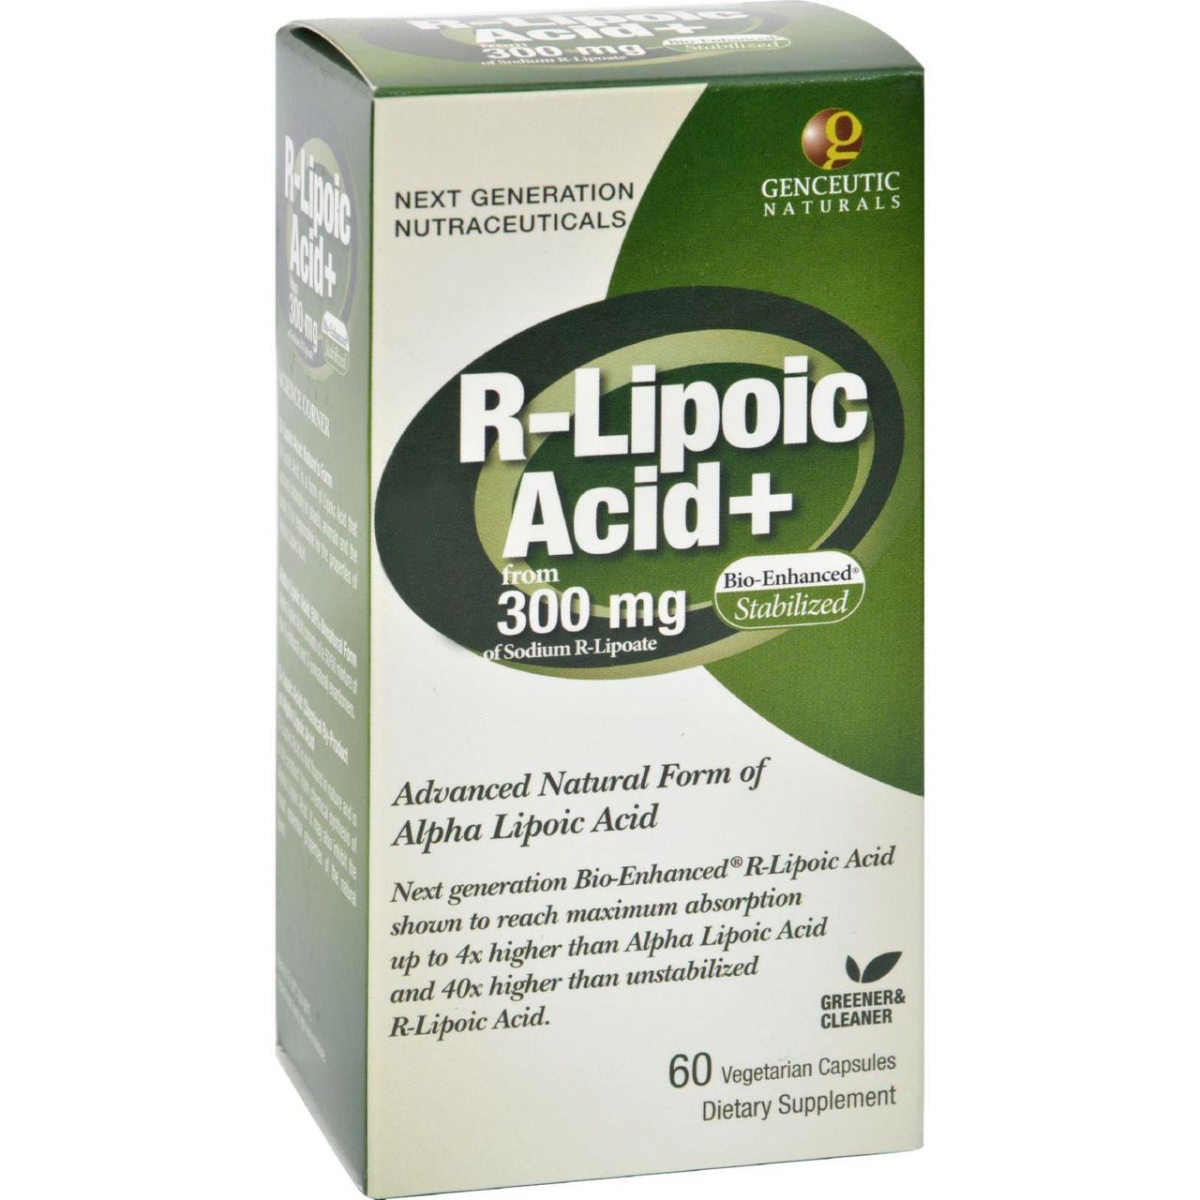 Picture of Genceutic Naturals HG0400408 300 mg R-Lipoic Acid Plus - 60 Vegetarian Capsules